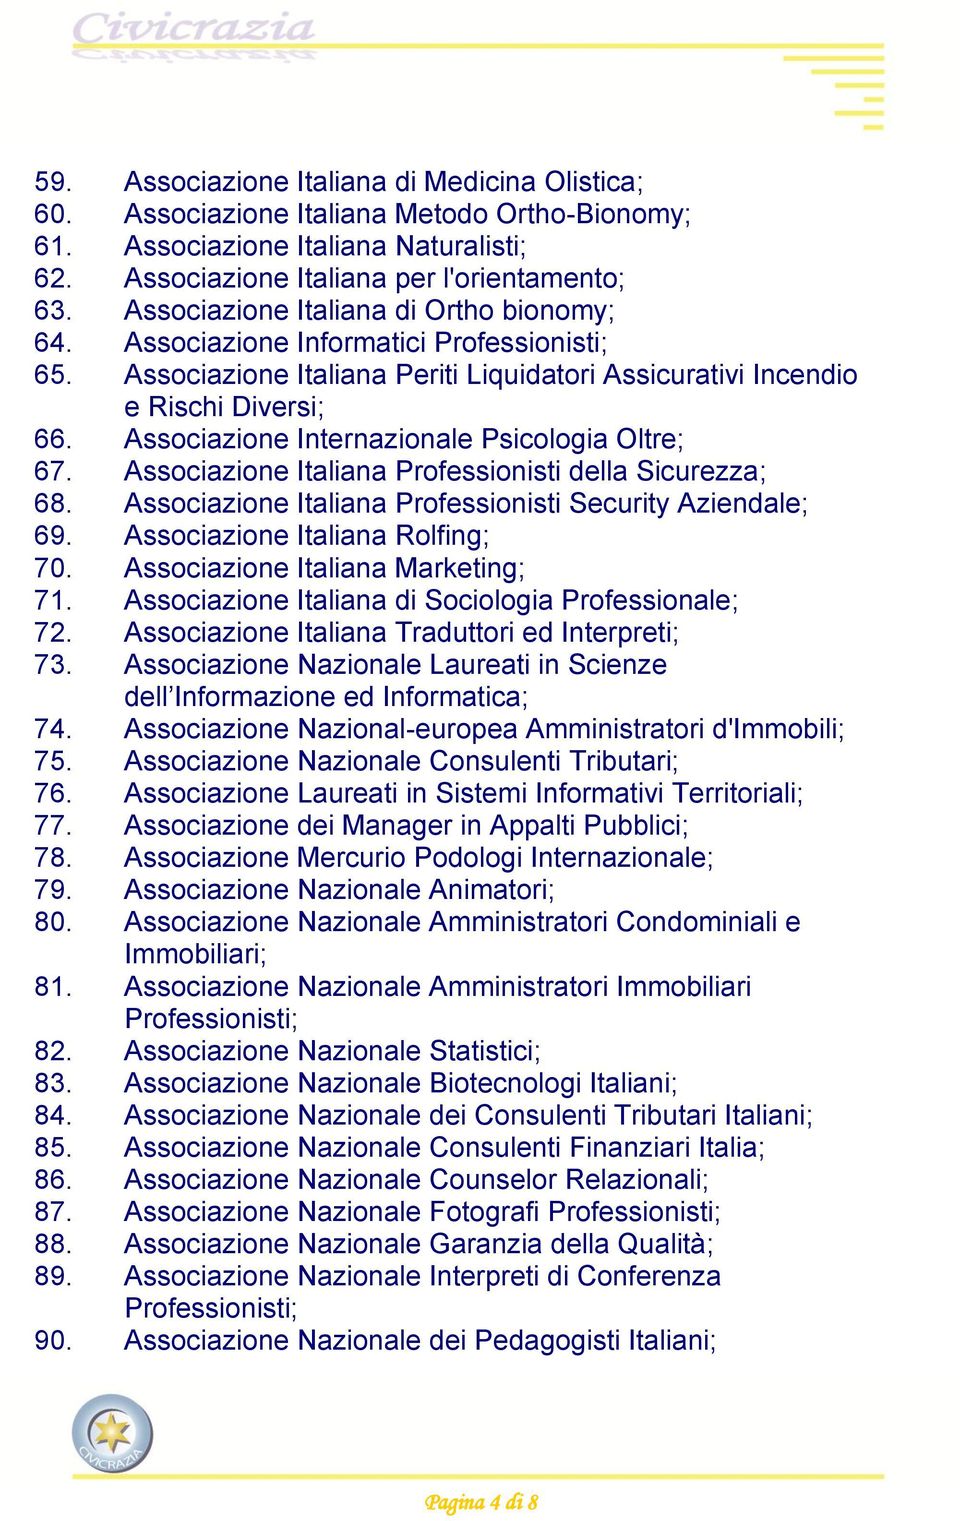 Associazione Internazionale Psicologia Oltre; 67. Associazione Italiana Professionisti della Sicurezza; 68. Associazione Italiana Professionisti Security Aziendale; 69.